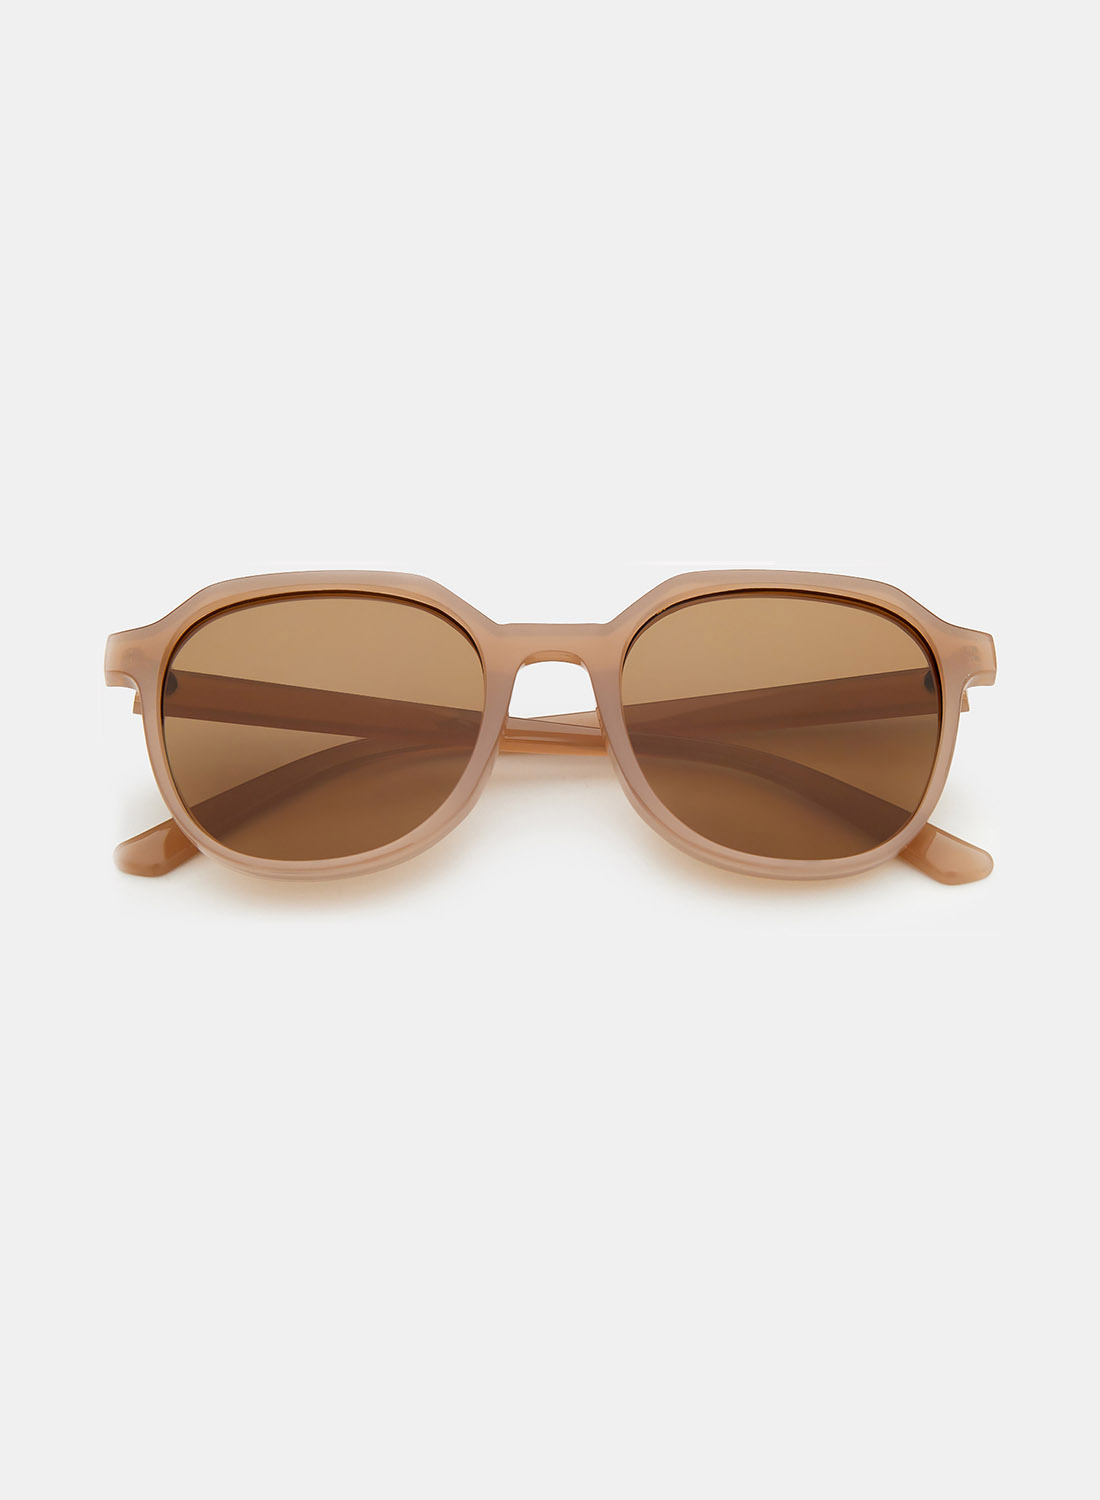 Солнцезащитные очки женские Ralf Ringer АУГЧ051200 коричневые